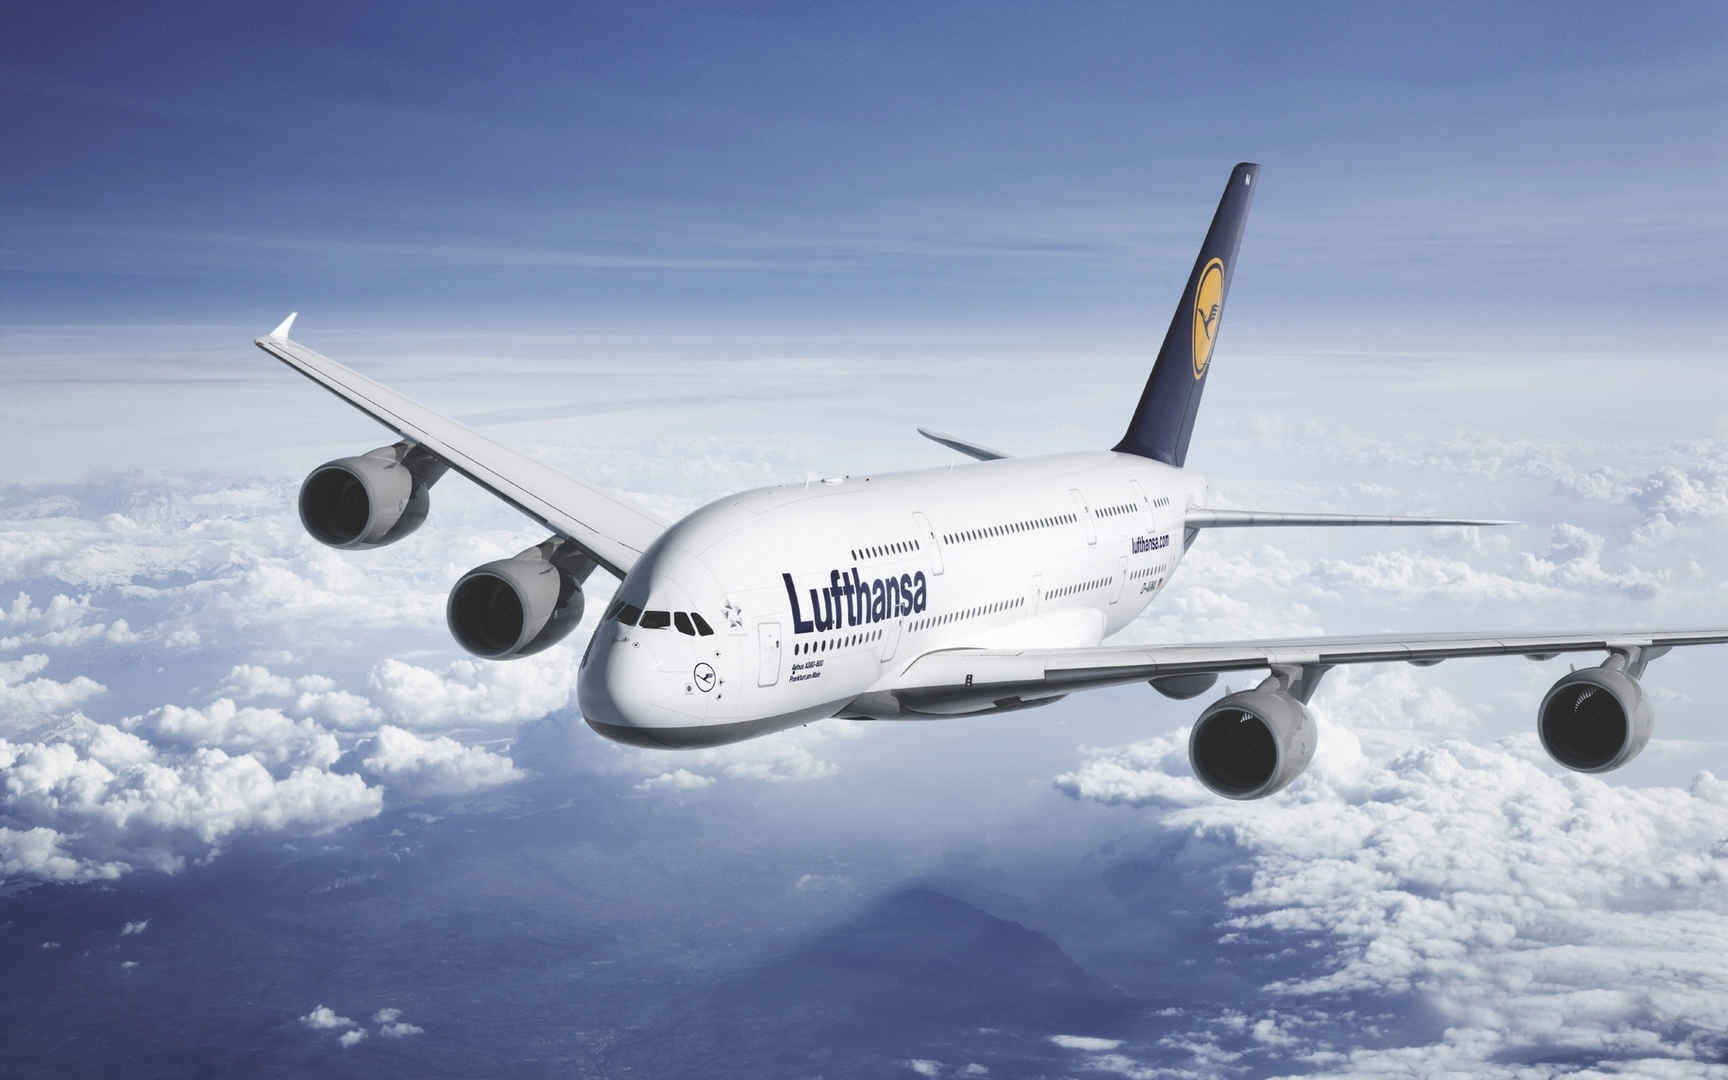 汉莎航空公司空中客车A380壁纸1366x768分辨率下载,汉莎航空公司空中客车A380壁纸,高清图片,壁纸-桌面城市